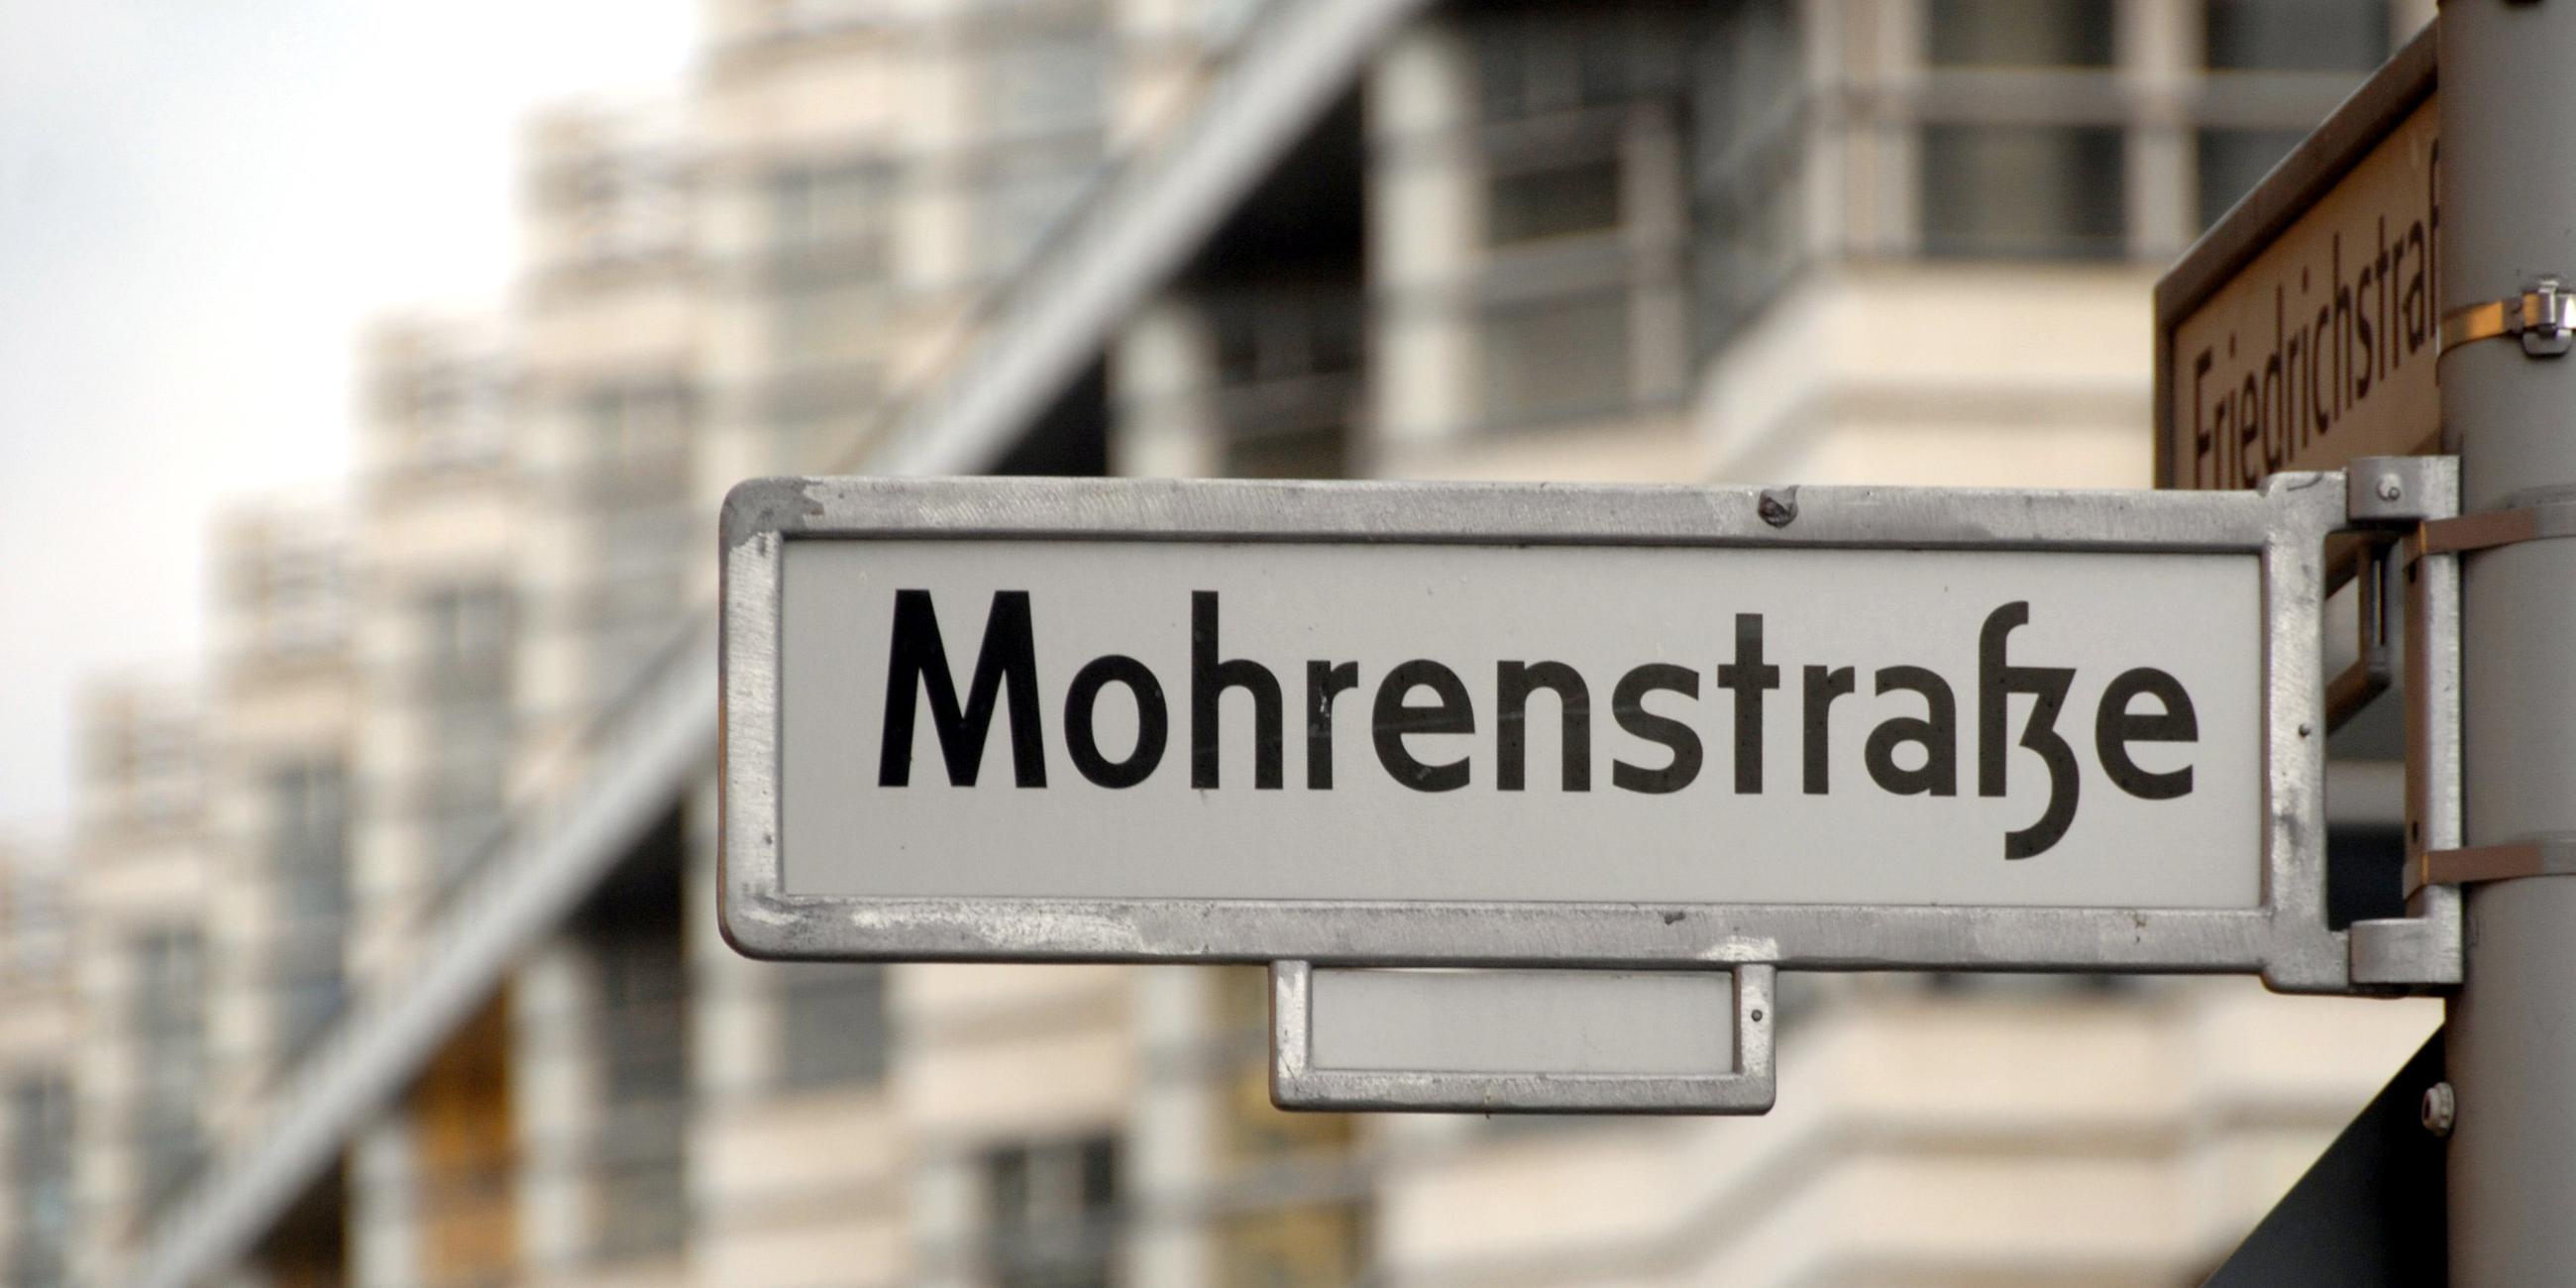 Straßenschild der "Mohrenstraße" in Berlin. (Archivbild)